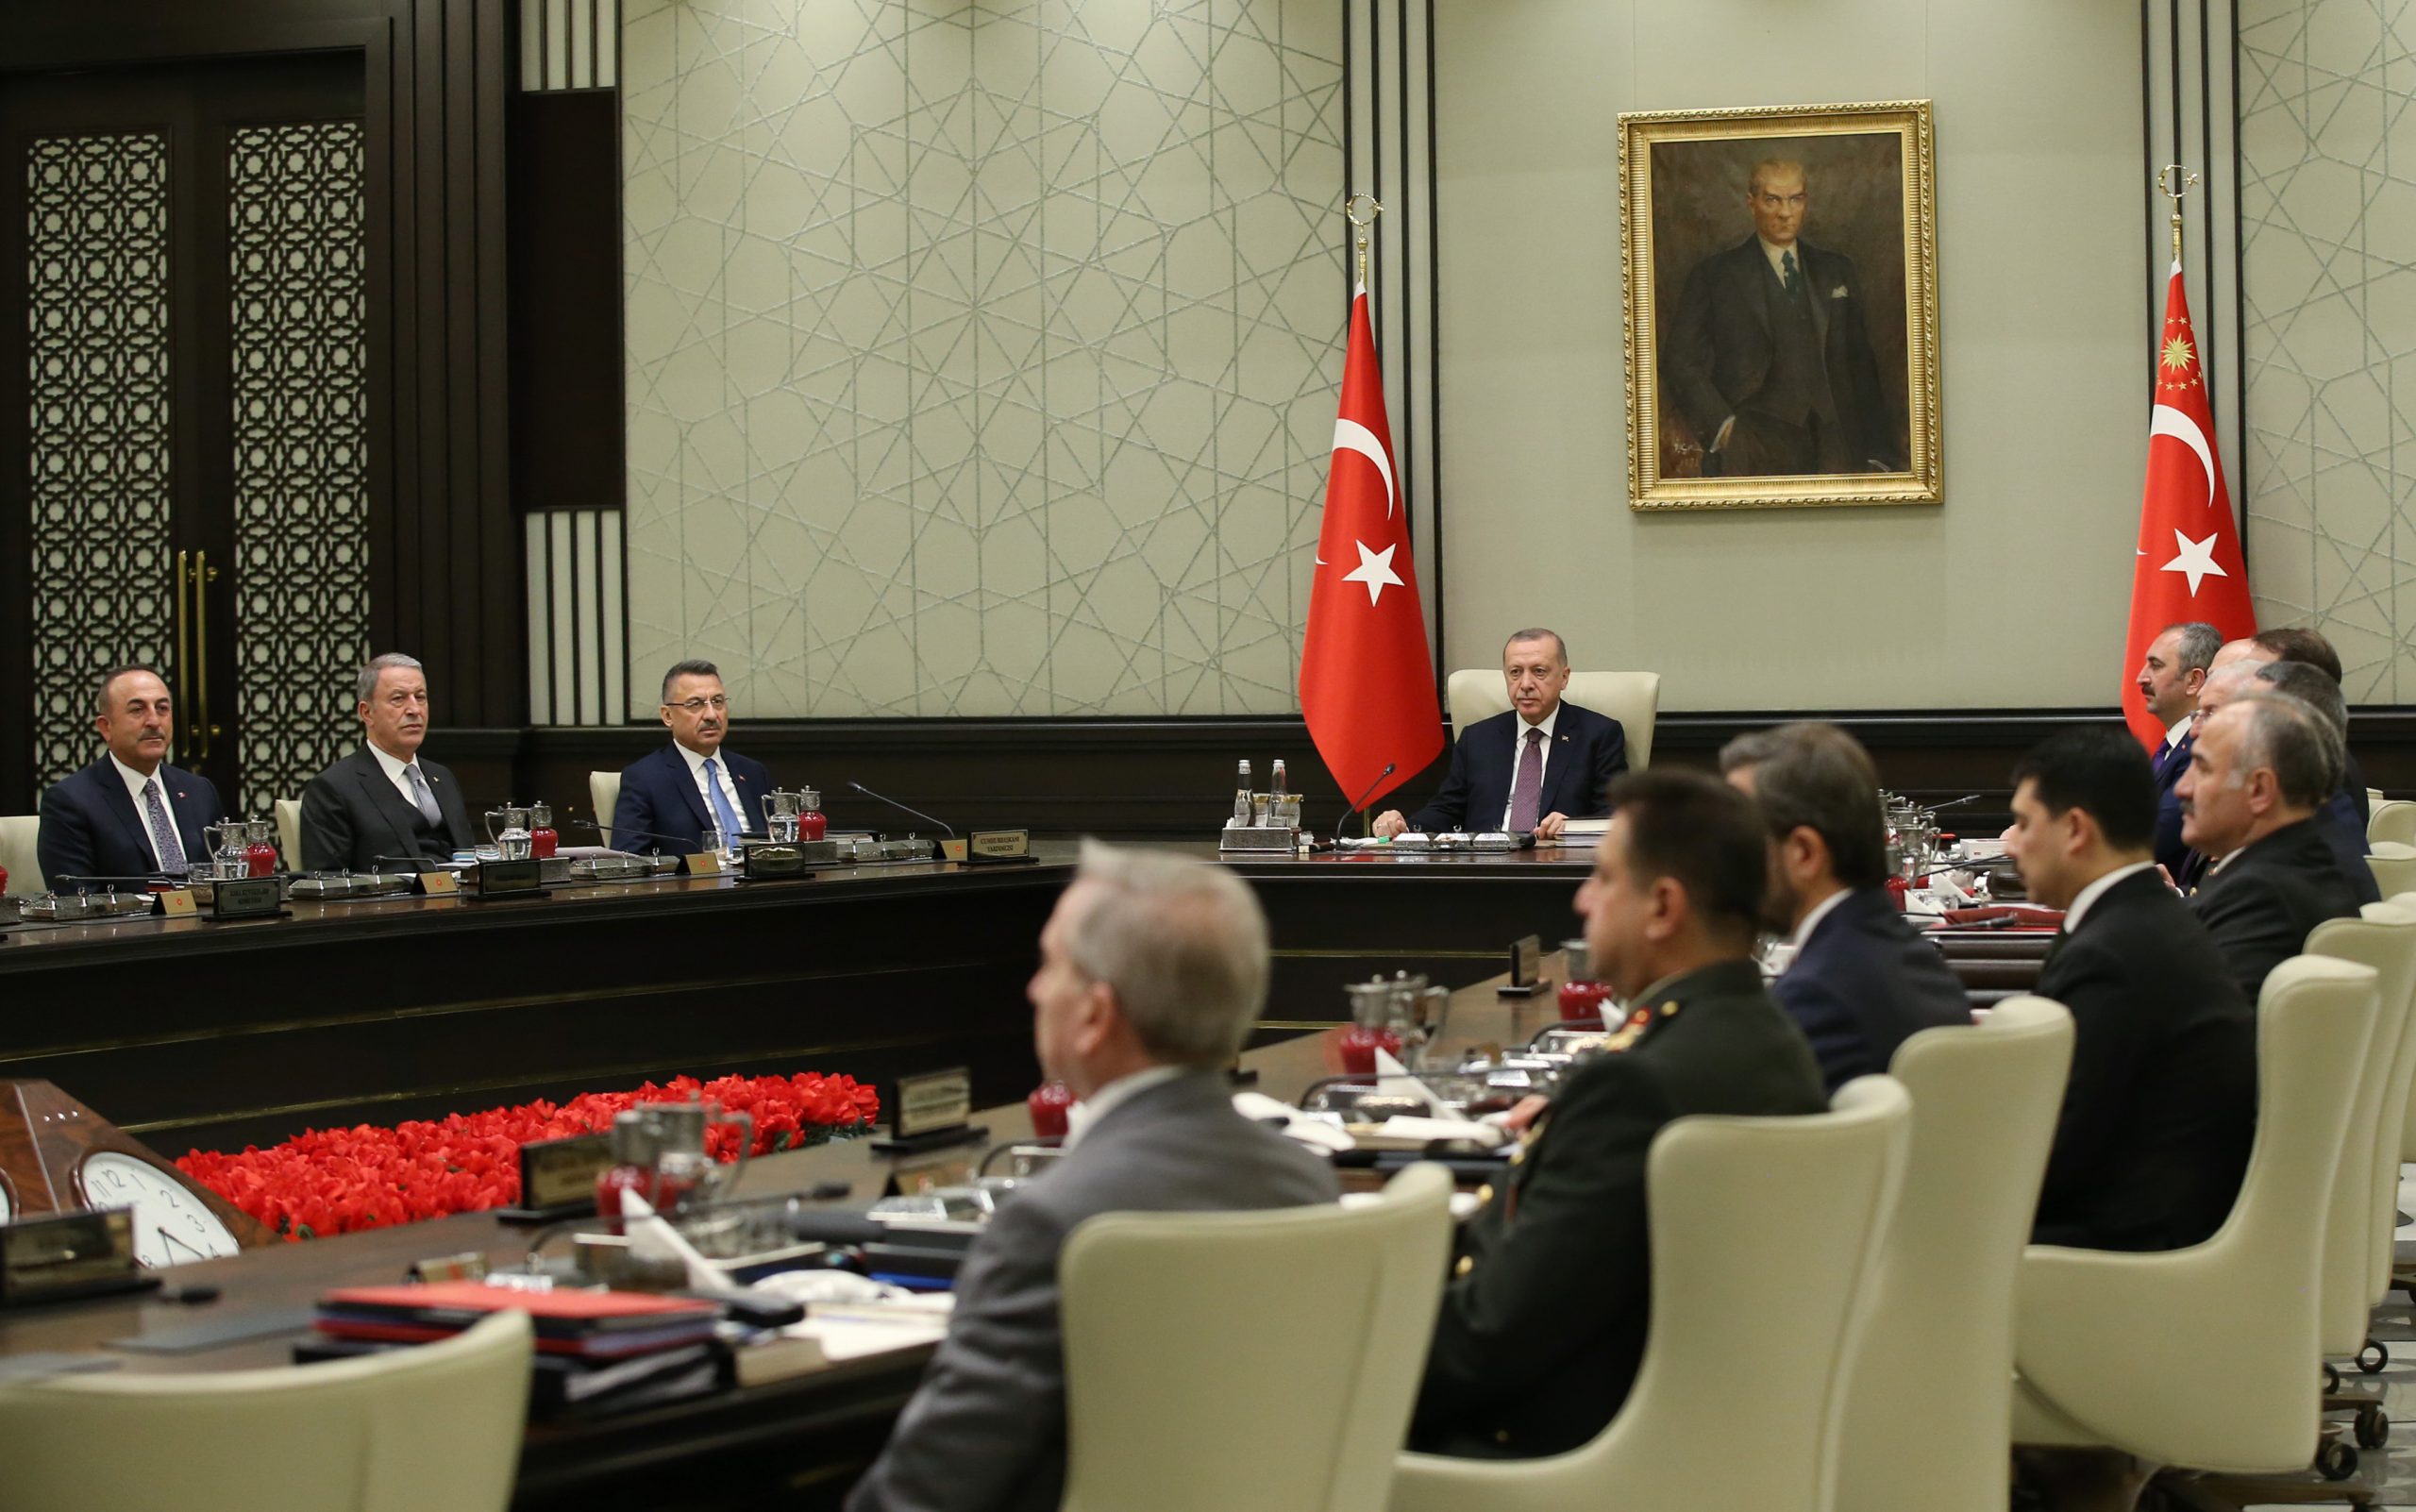 Kabine bugün Cumhurbaşkanı Recep Tayyip Erdoğan başkanlığında toplanıyor. Toplantının en kritik konularından biri Bilim Kurulu’nca eğitime başlanılması önerilen 2, 8 ve 12. sınıfların durumları olacak.